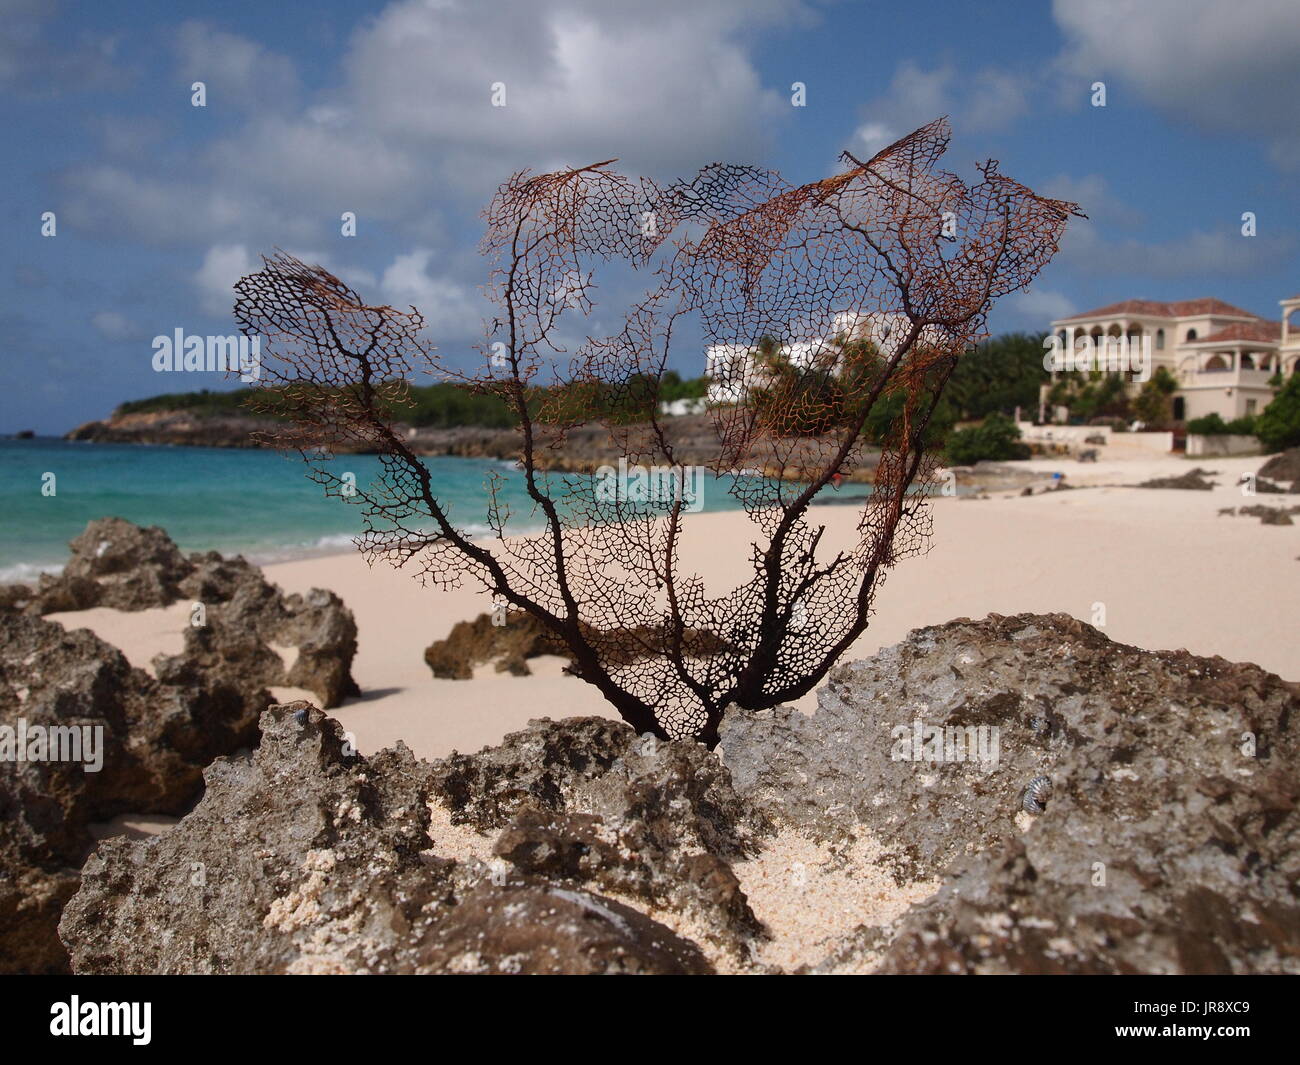 Sun bleached Purple Sea Fan coral stuck in a rock at Limestone Bay, Anguilla, BWI. Stock Photo